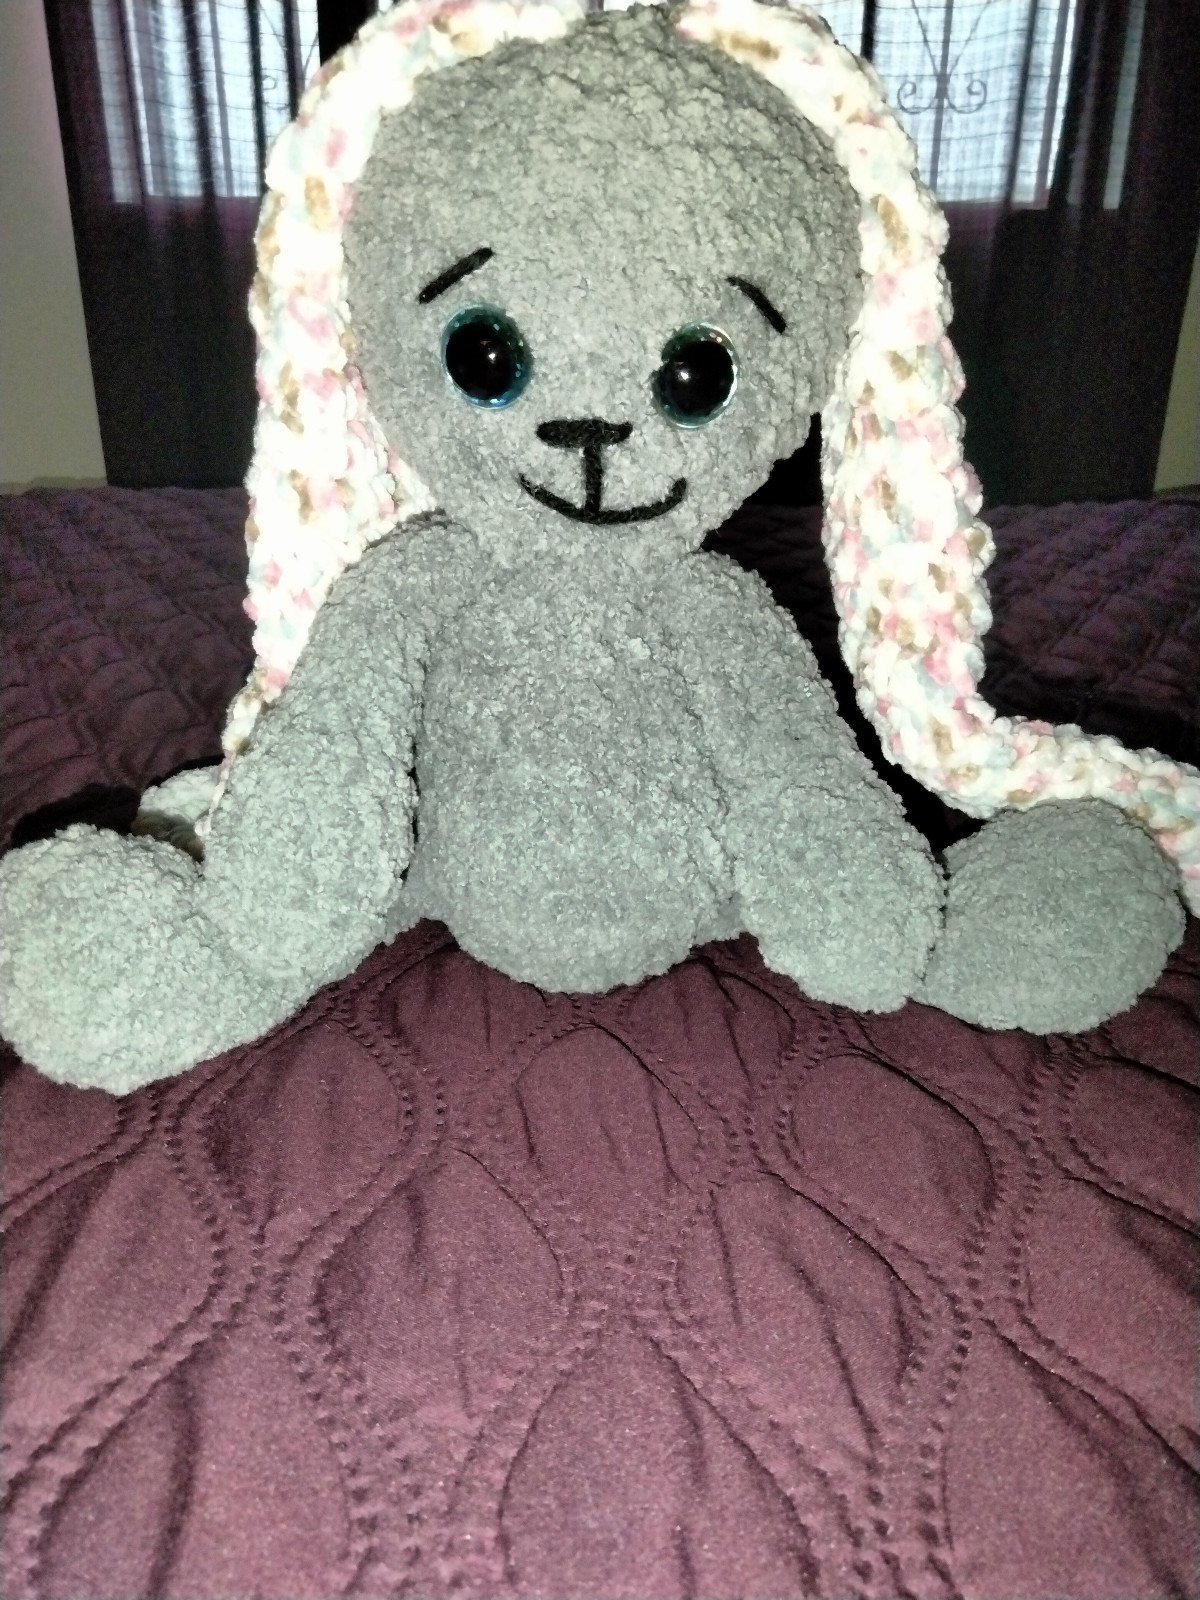 Crochet Bunny plush kvzKQIX4w